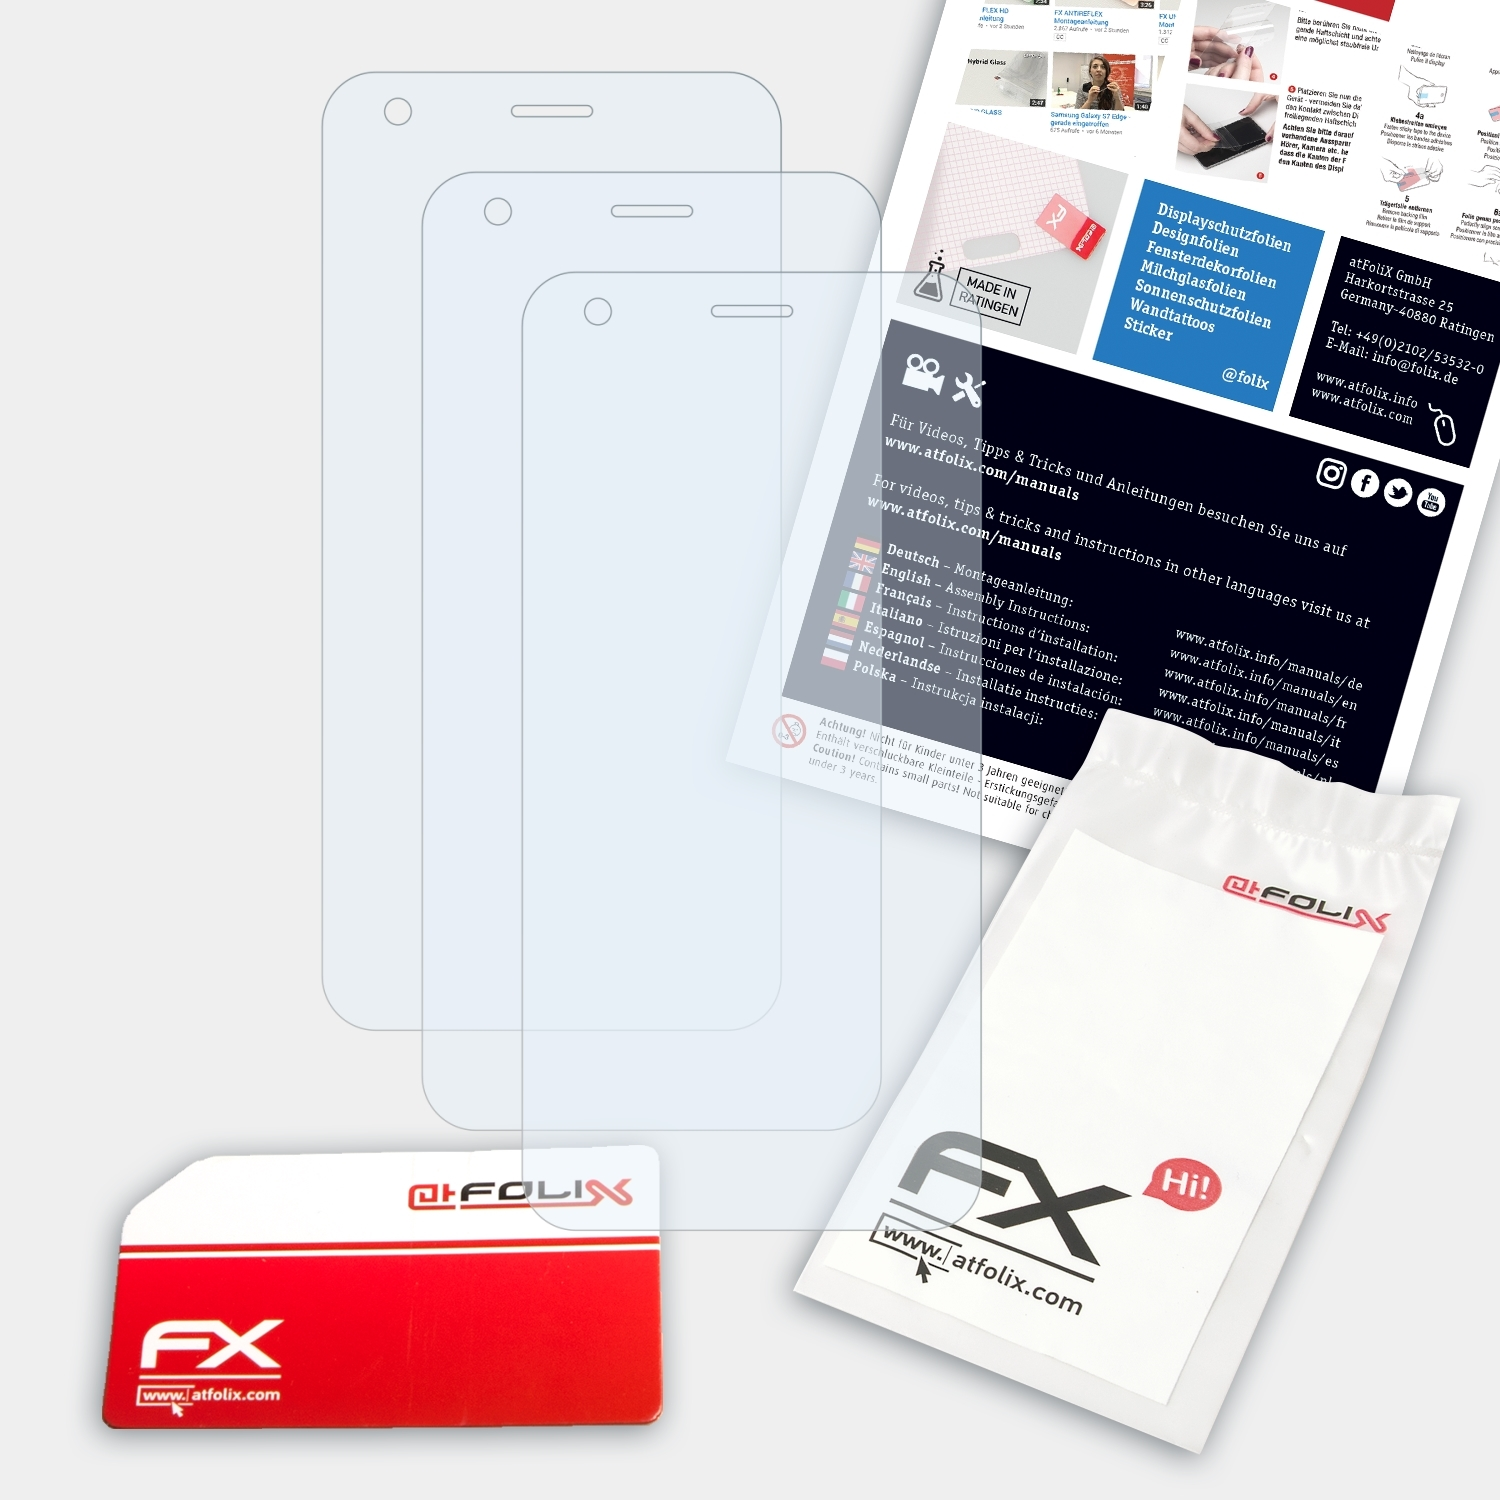 Vodafone 3x ultra Displayschutz(für ATFOLIX Smart 6) FX-Clear